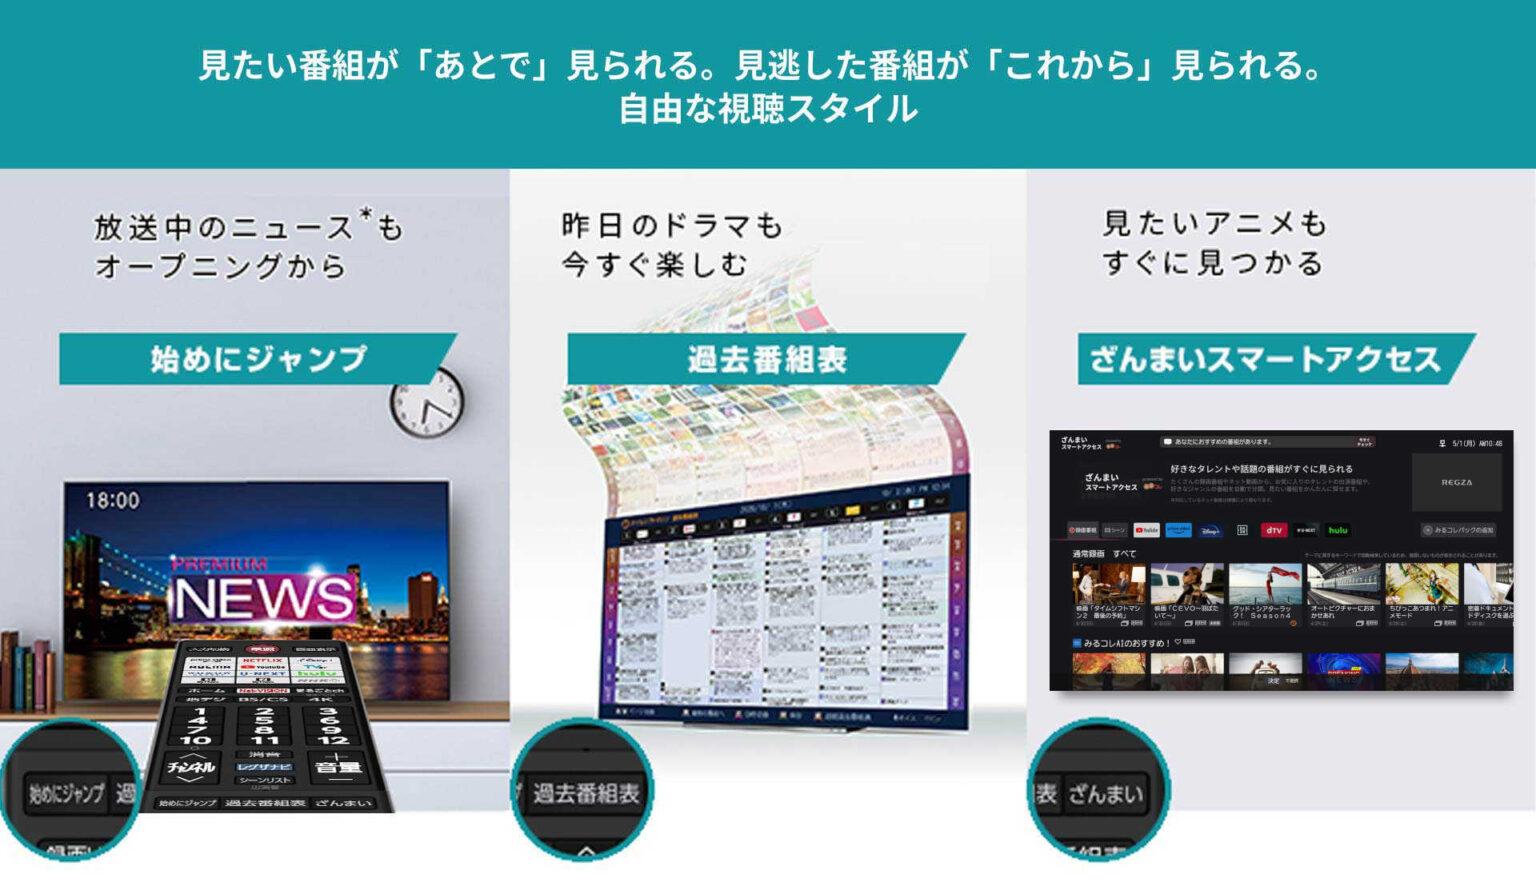 元東芝tvsレグザのタイムマシンソフト機能について説明されている画像